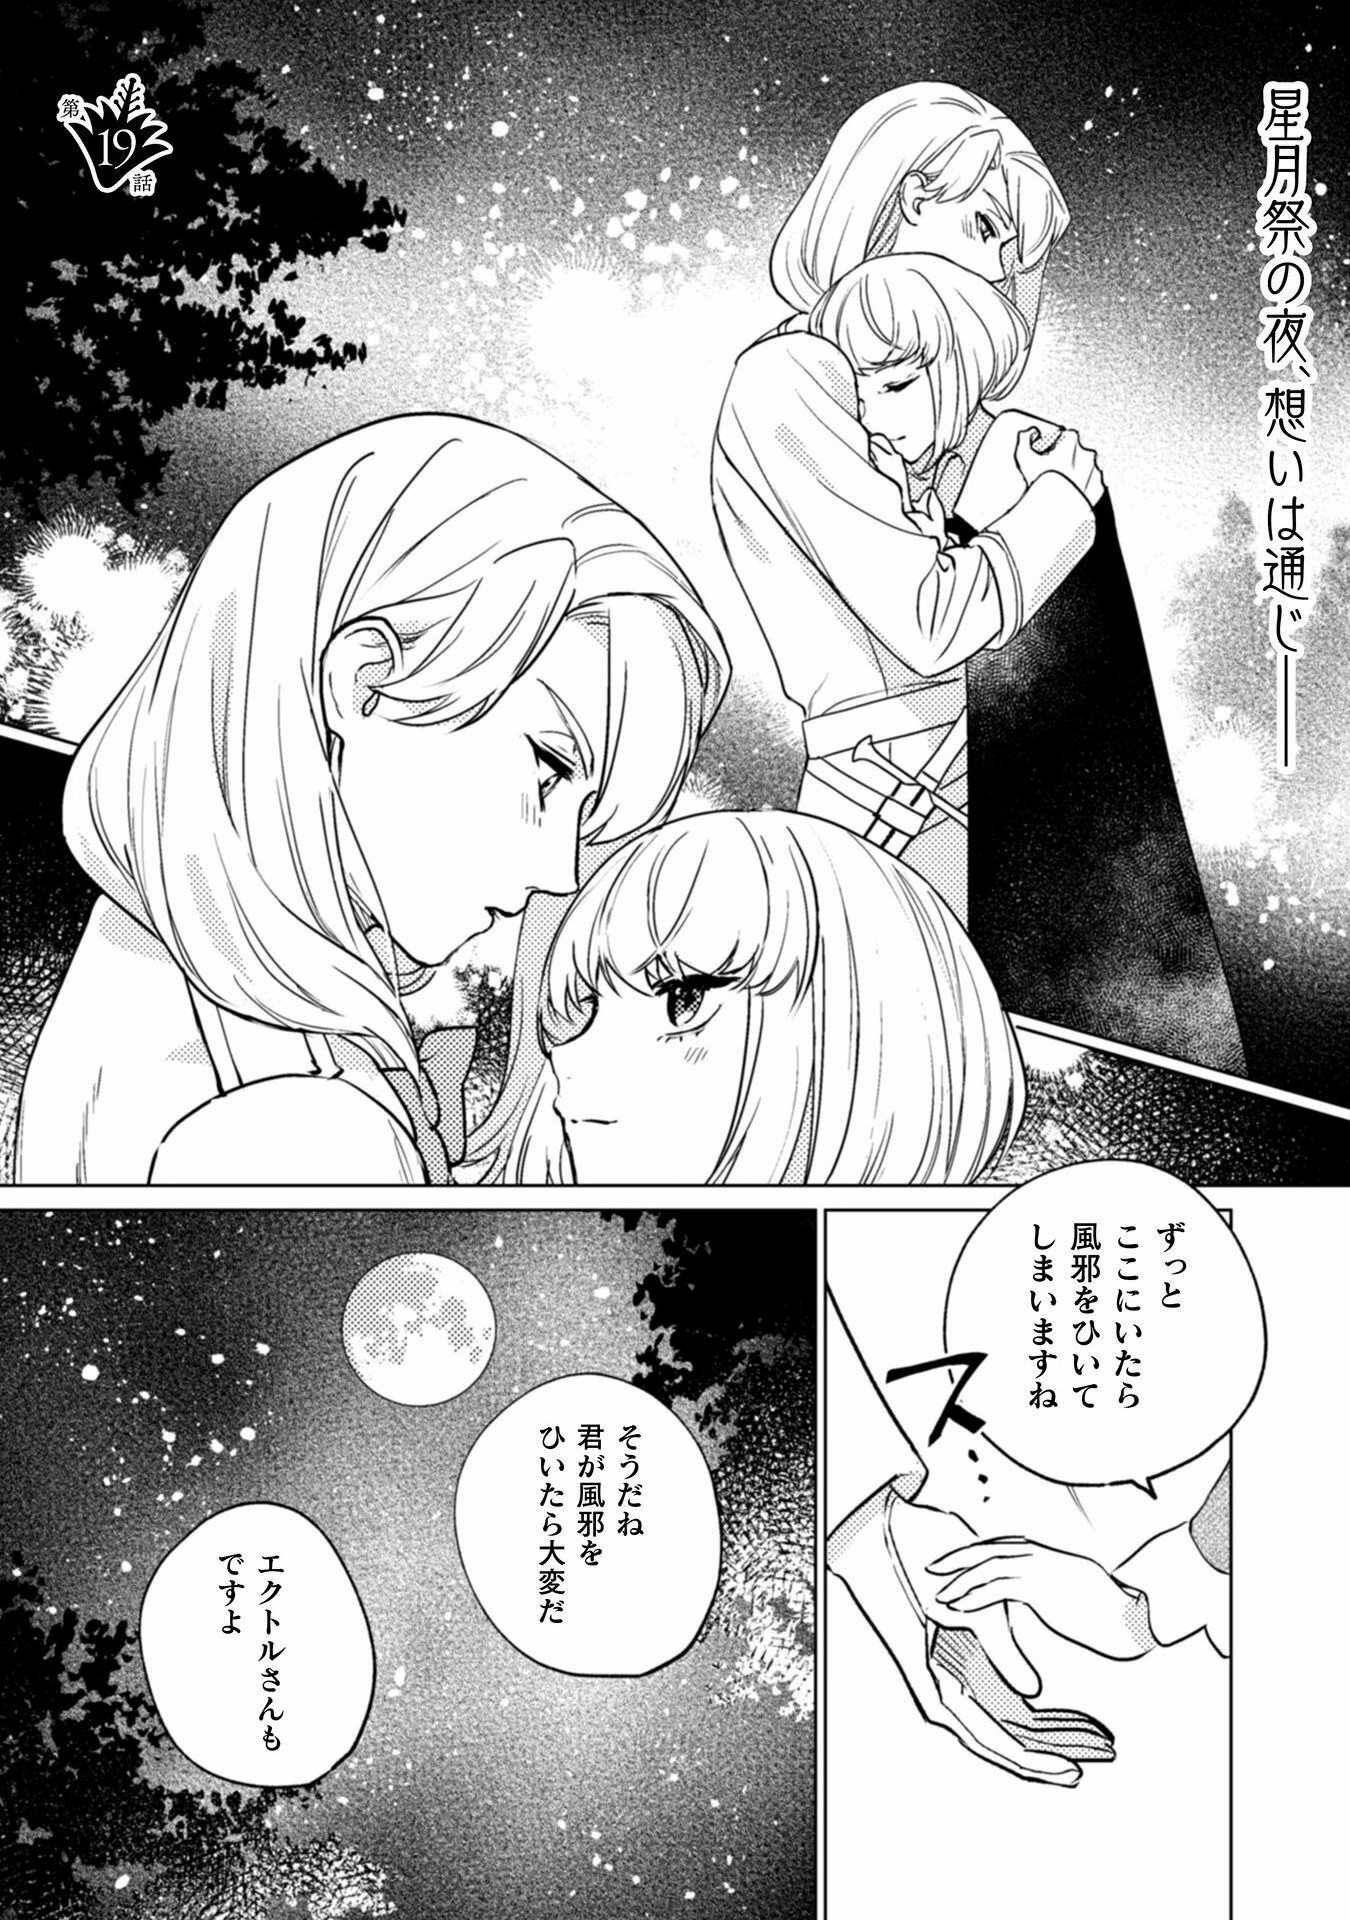 Uranaishi ni wa Hana Kishi no Koigokoro ga Mieteimasu - Chapter 19 - Page 1